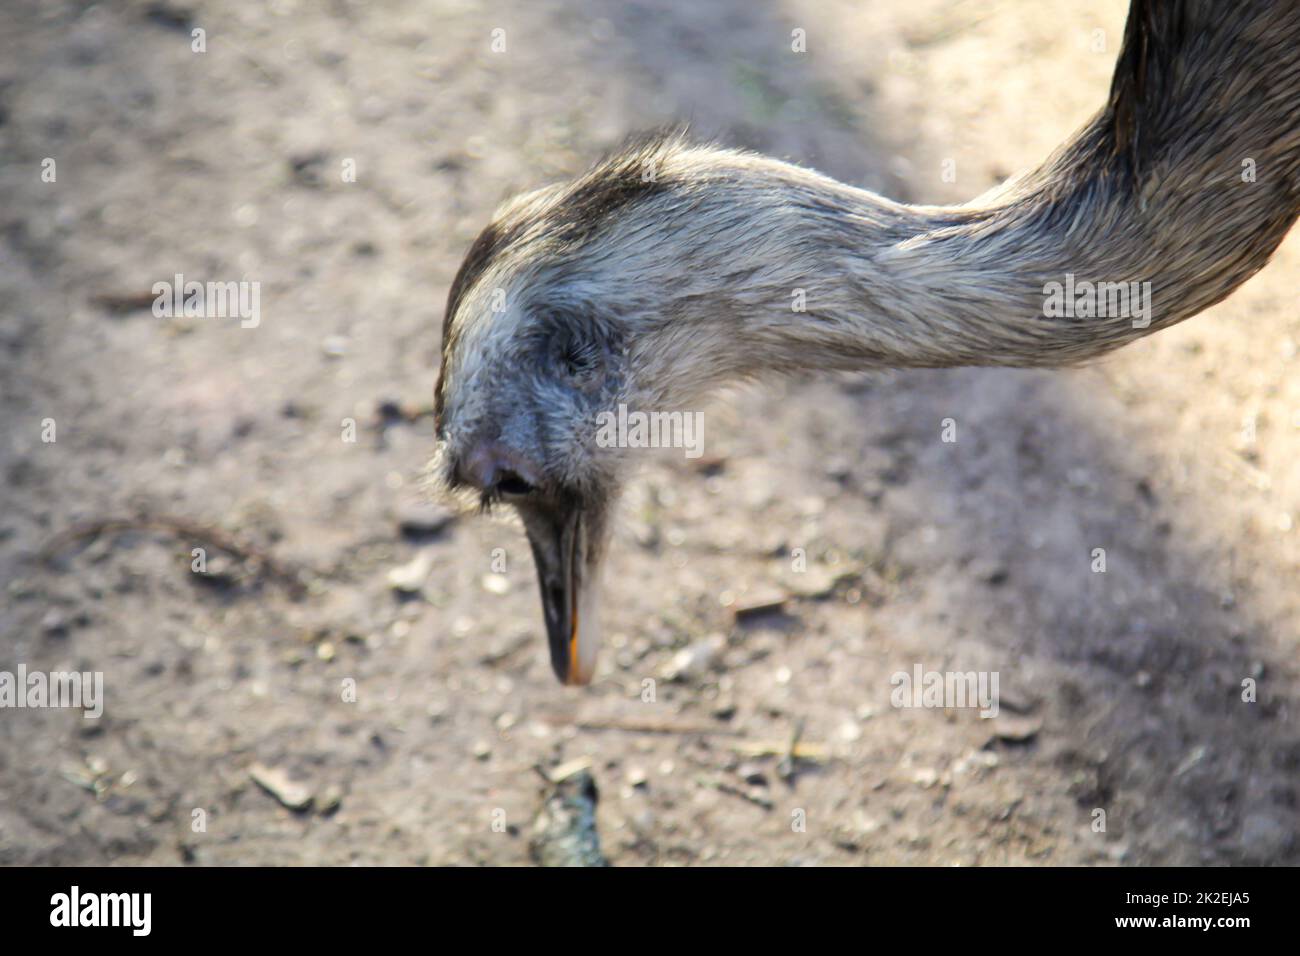 Portrait of a Nandu, a flightless bird. Stock Photo